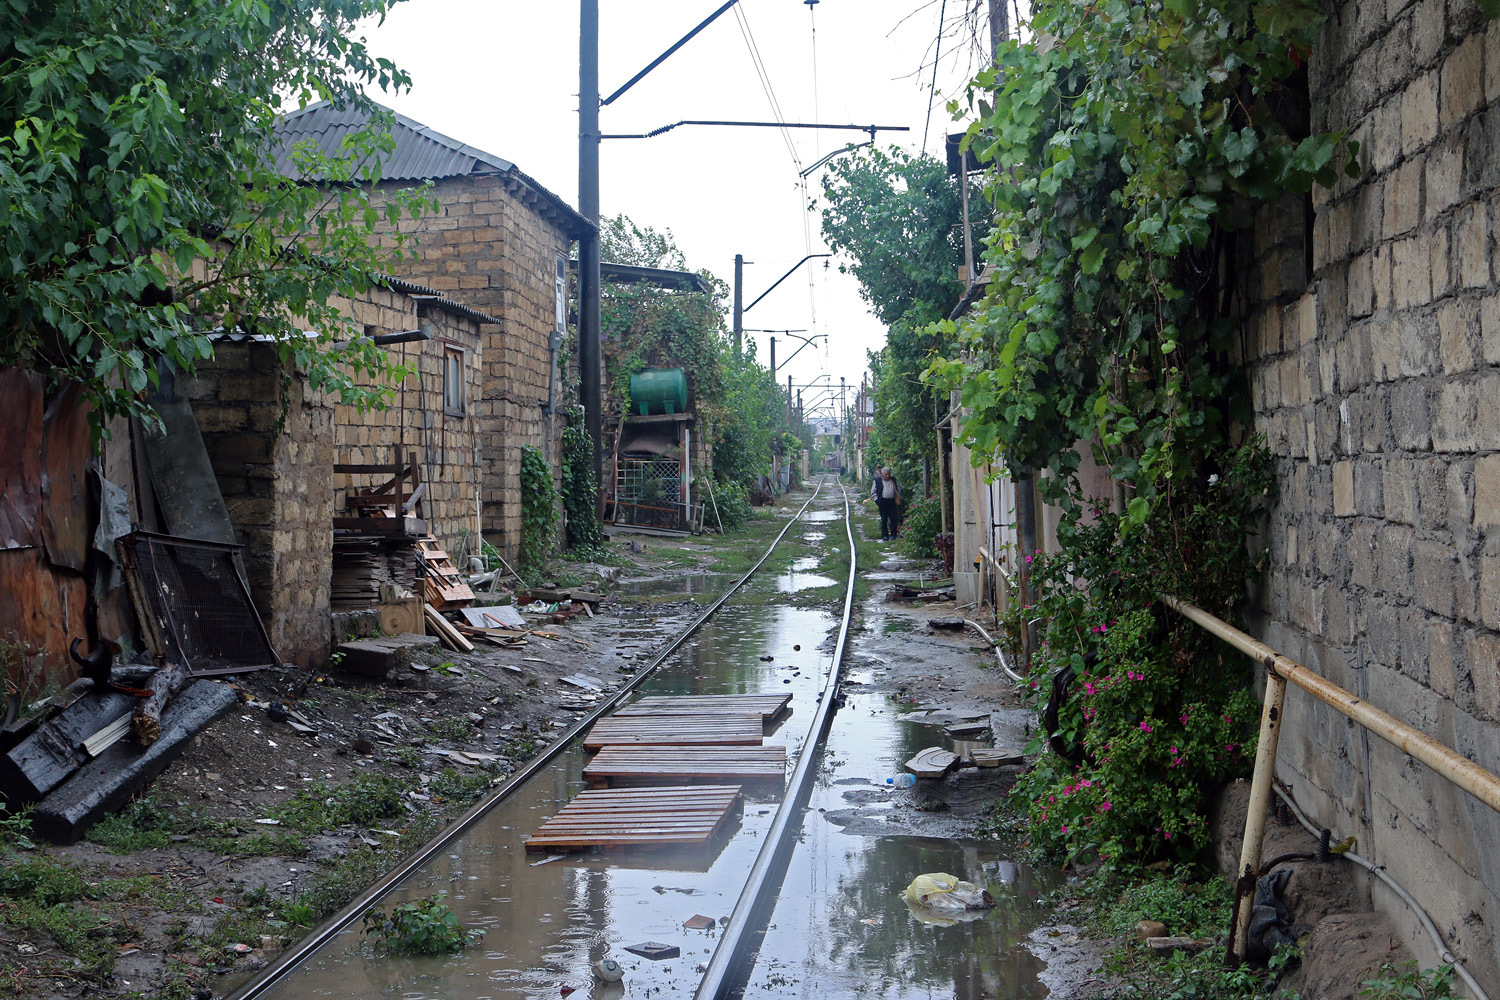 Азербайджанские железные дороги — Разные фотографии